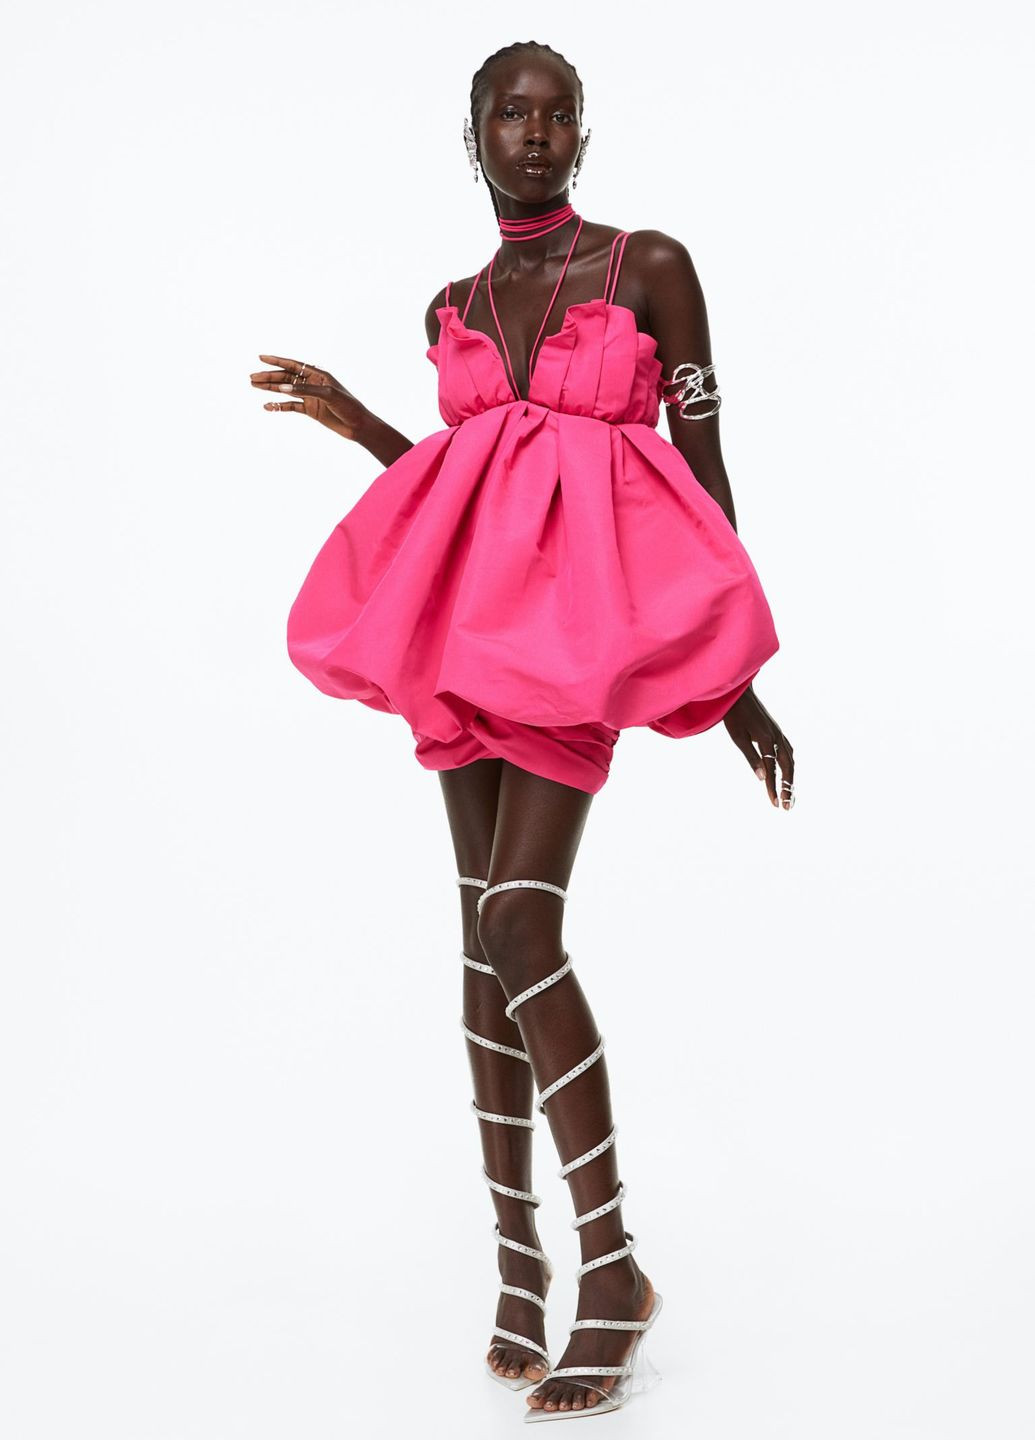 Фуксинова (кольору Фукія) коктейльна сукня атласна H&M однотонна